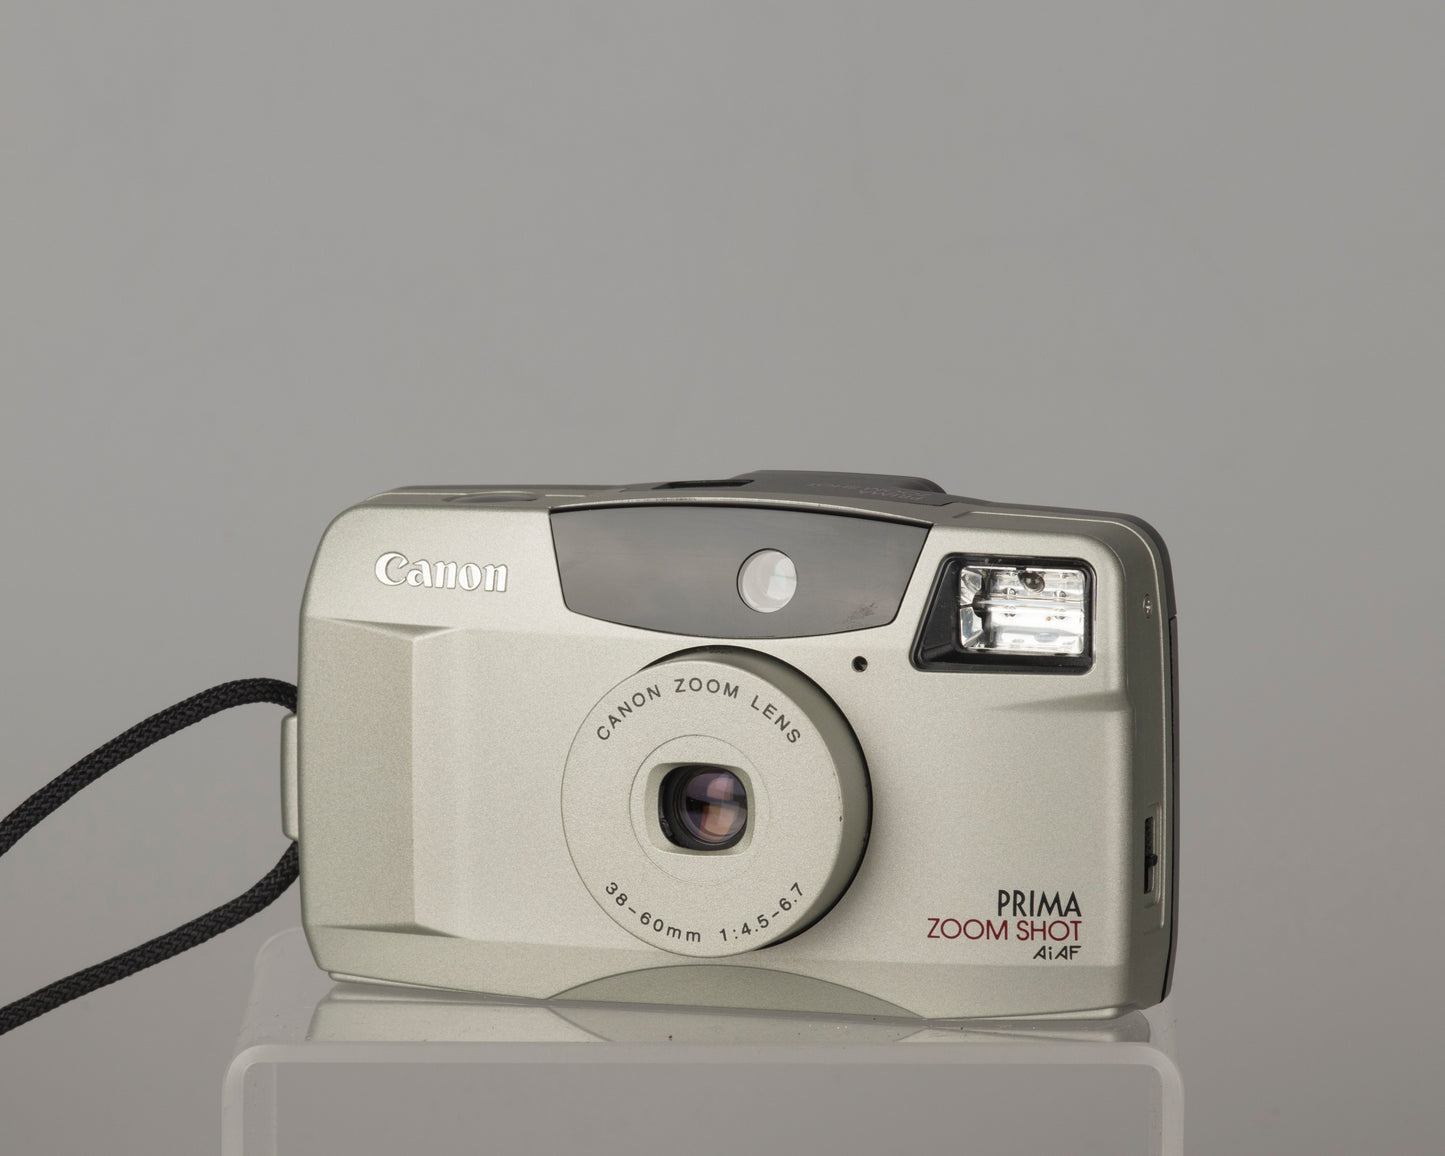 Canon Prima Zoom Shot 35mm film camera